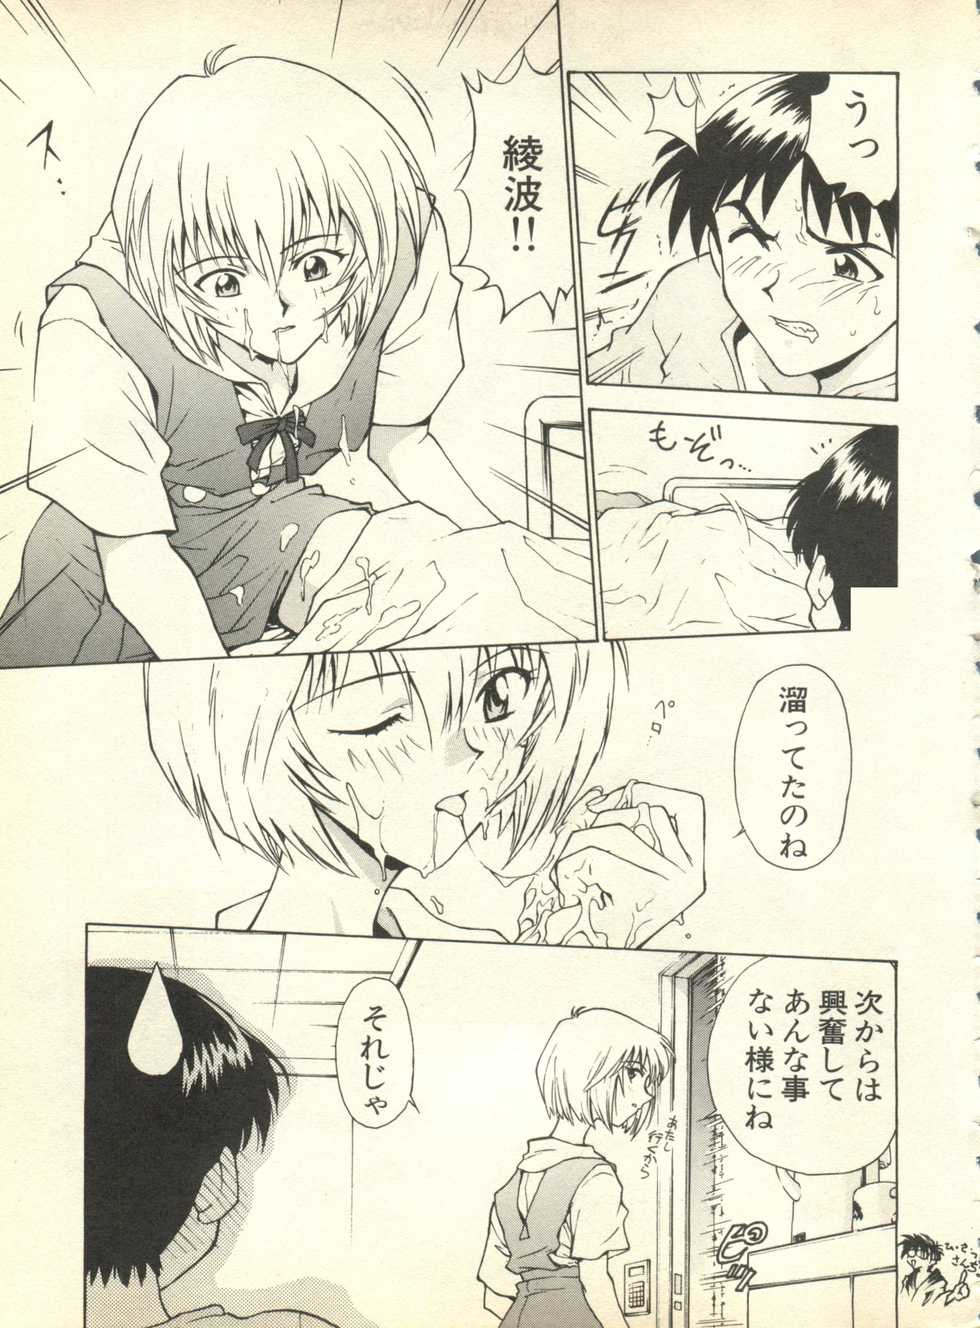 [Anthology] Shitsurakuen 3 - Paradise Lost 3 (Neon Genesis Evangelion) - Page 10